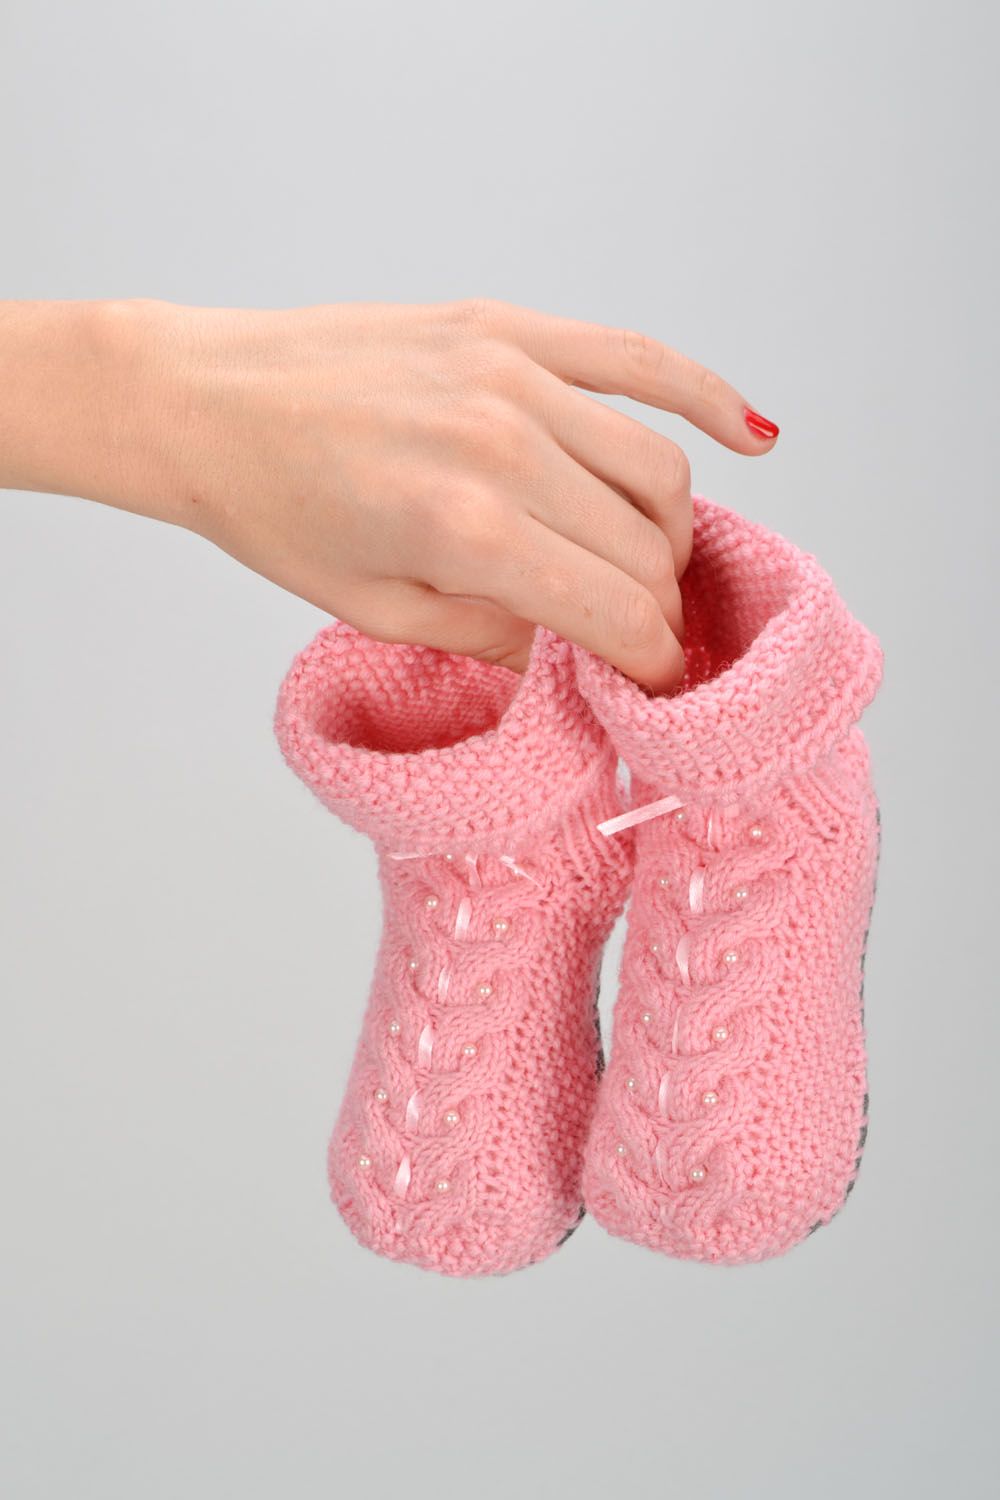 Chaussons tricotés à main roses originaux  photo 2